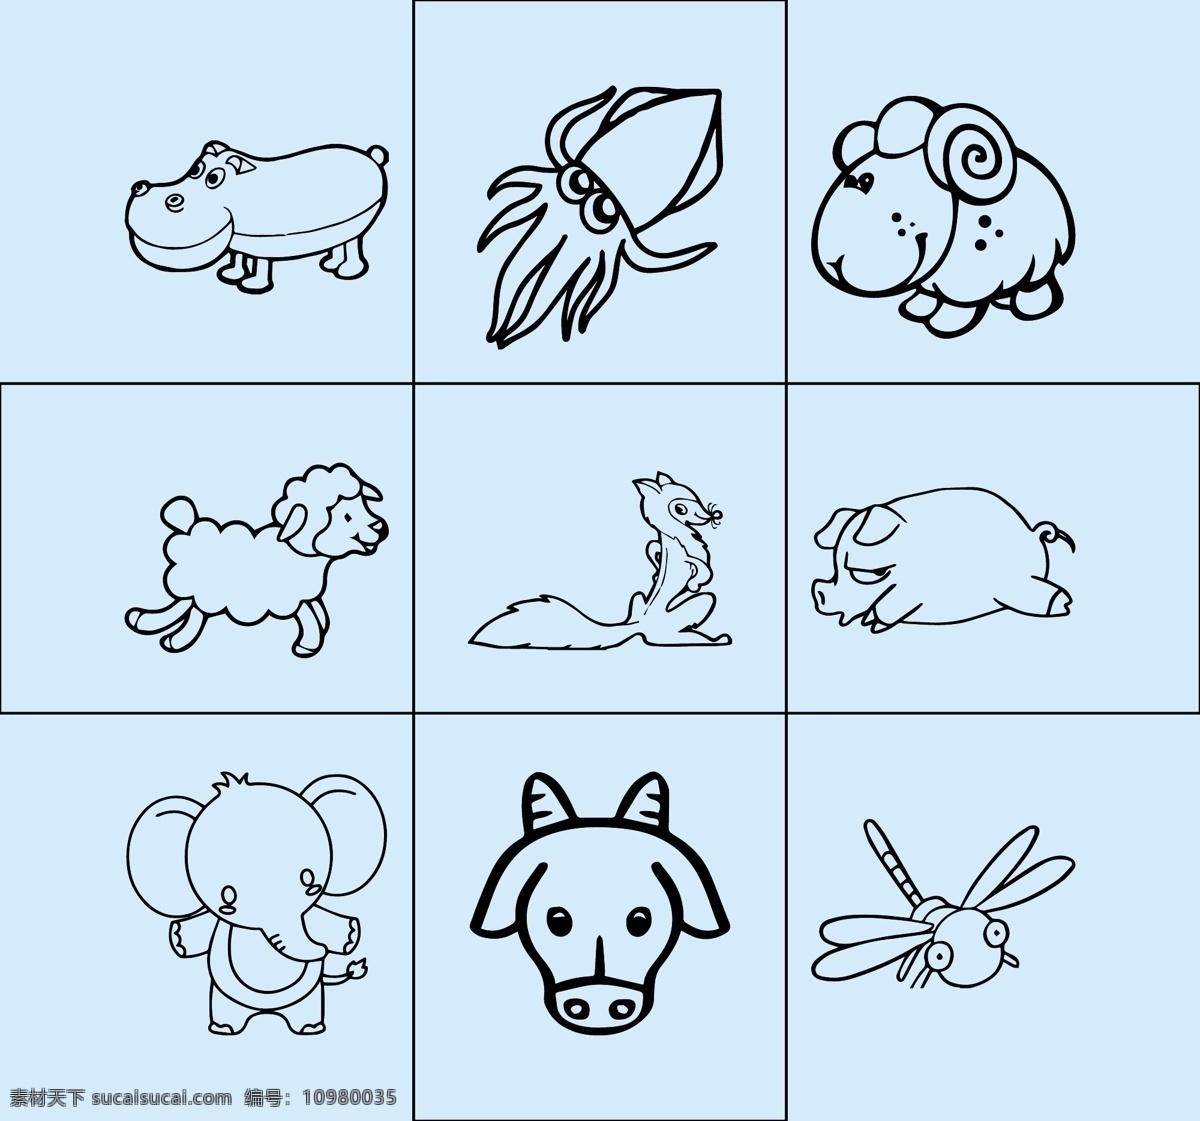 小动物 简笔画 线条图 矢量图 可改动 犀牛 乌贼 羊 狐狸 猪 象 牛 动漫动画